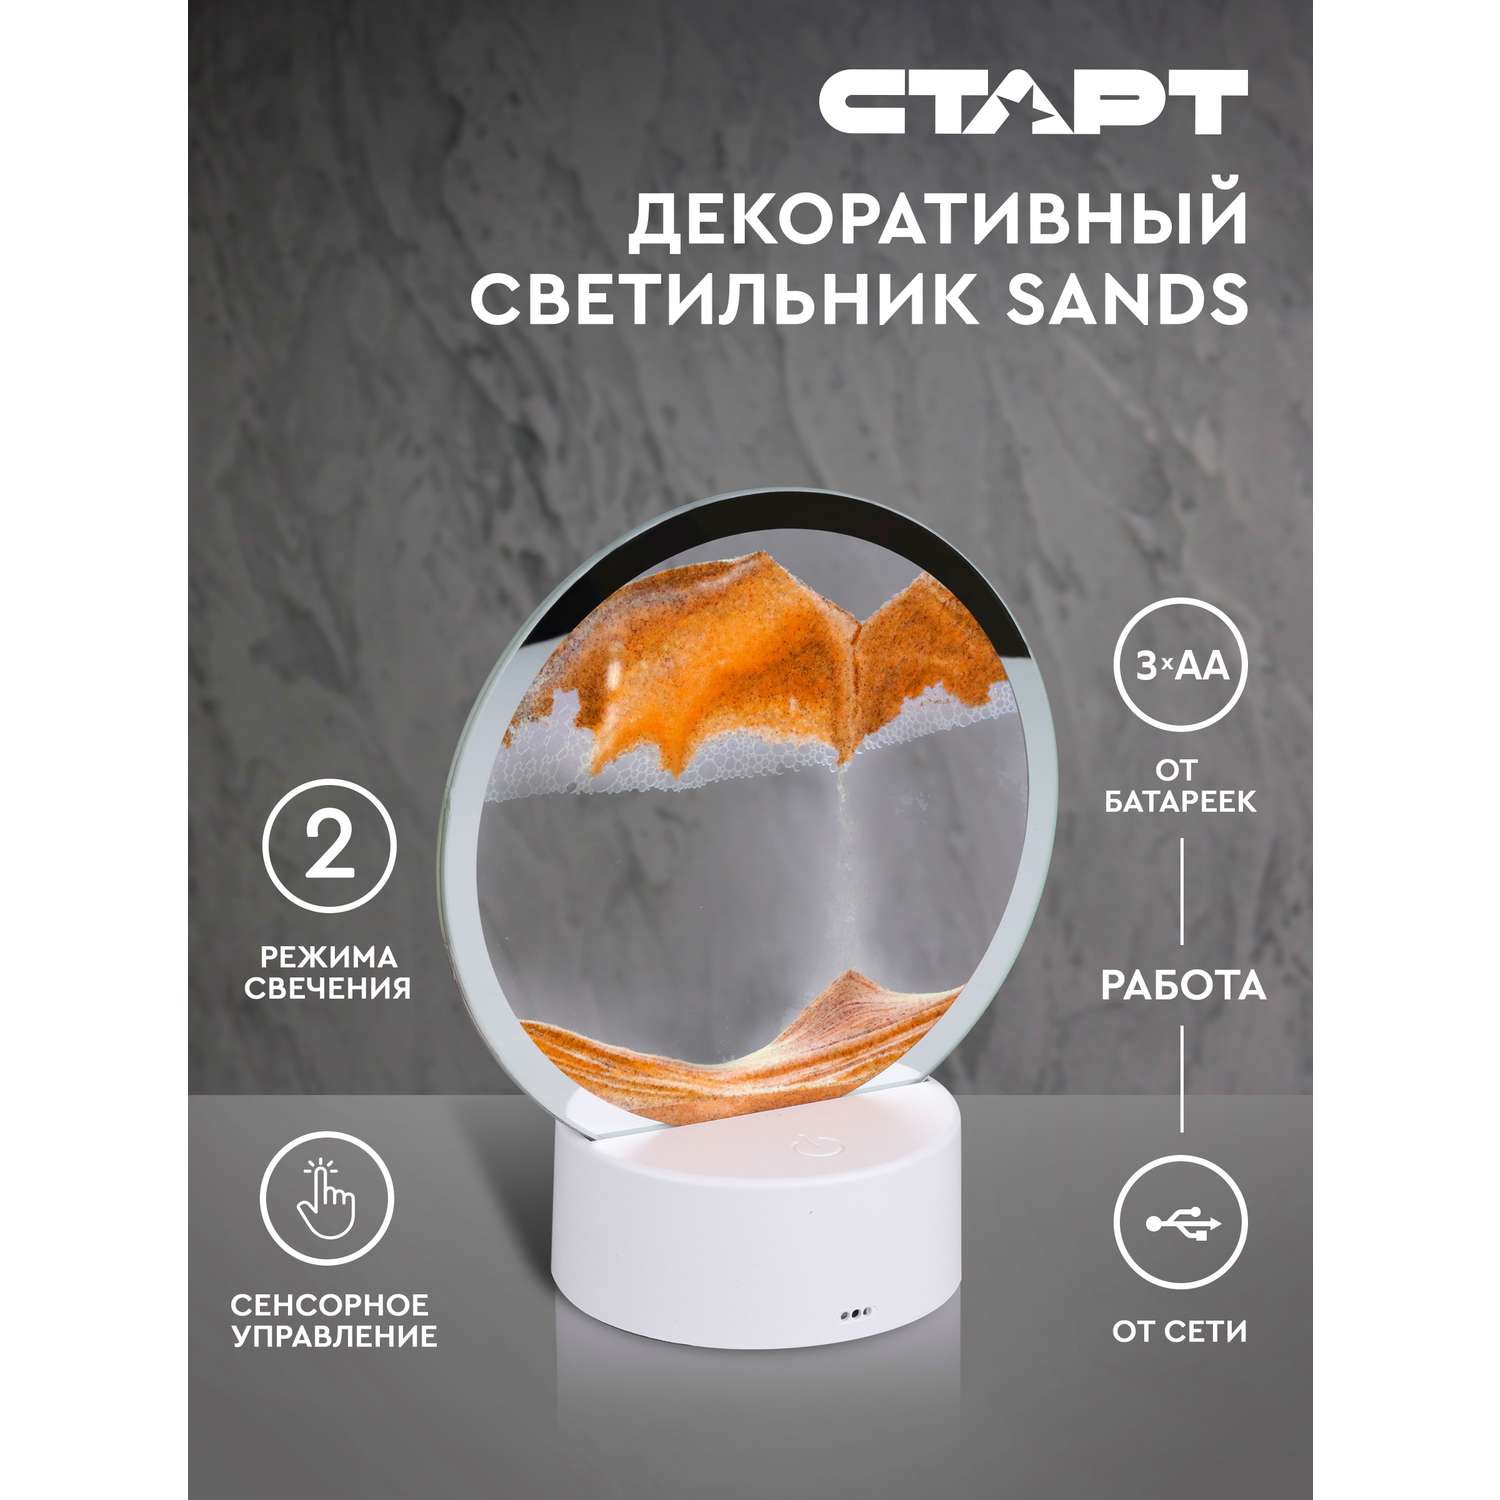 Светильник ночник СТАРТ декоративный серии Sands с песком оранжевого цвета - фото 1